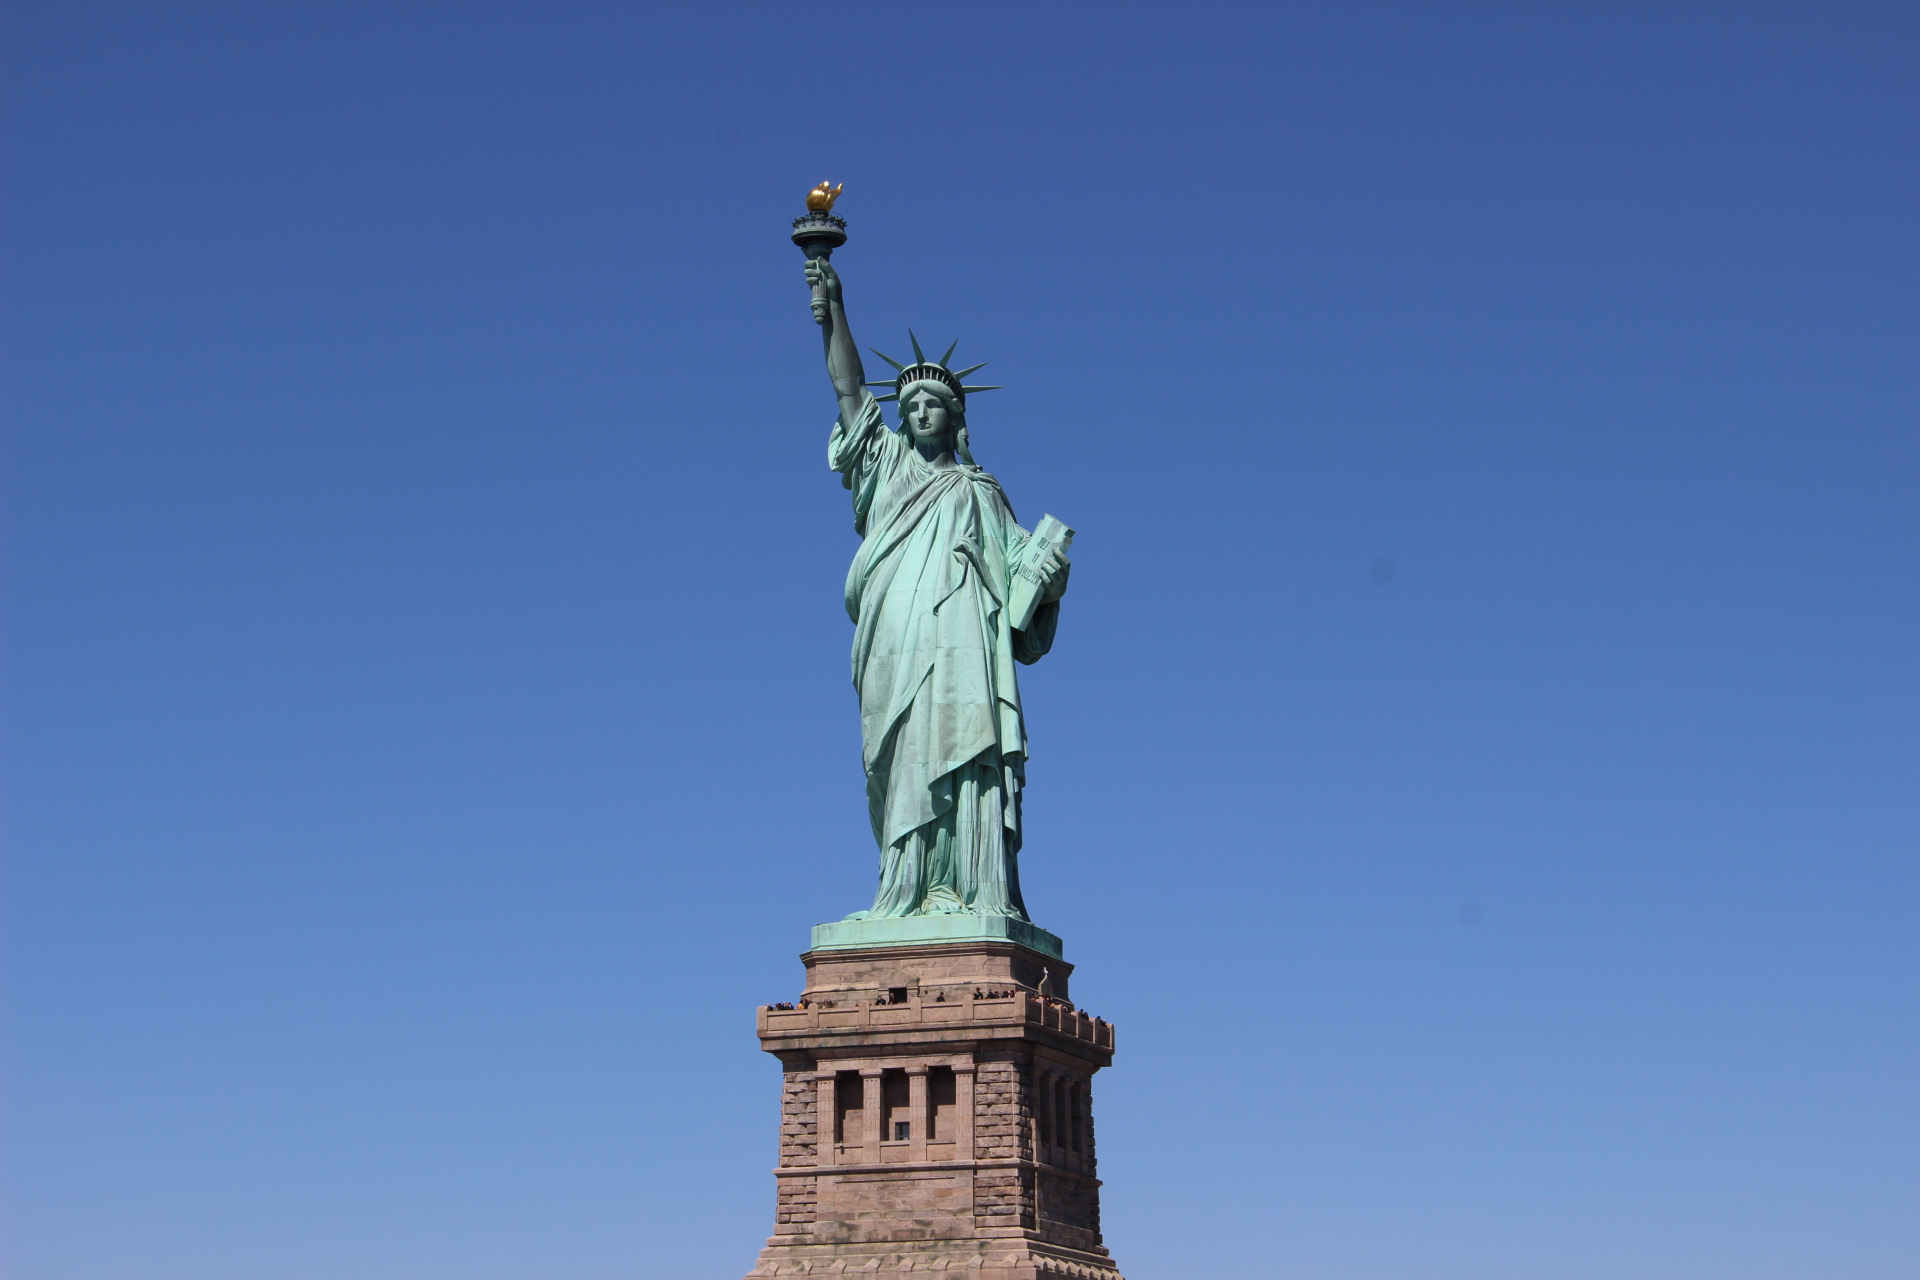 自由女神像是由钢,铜合金铸造而成的,底座高达154